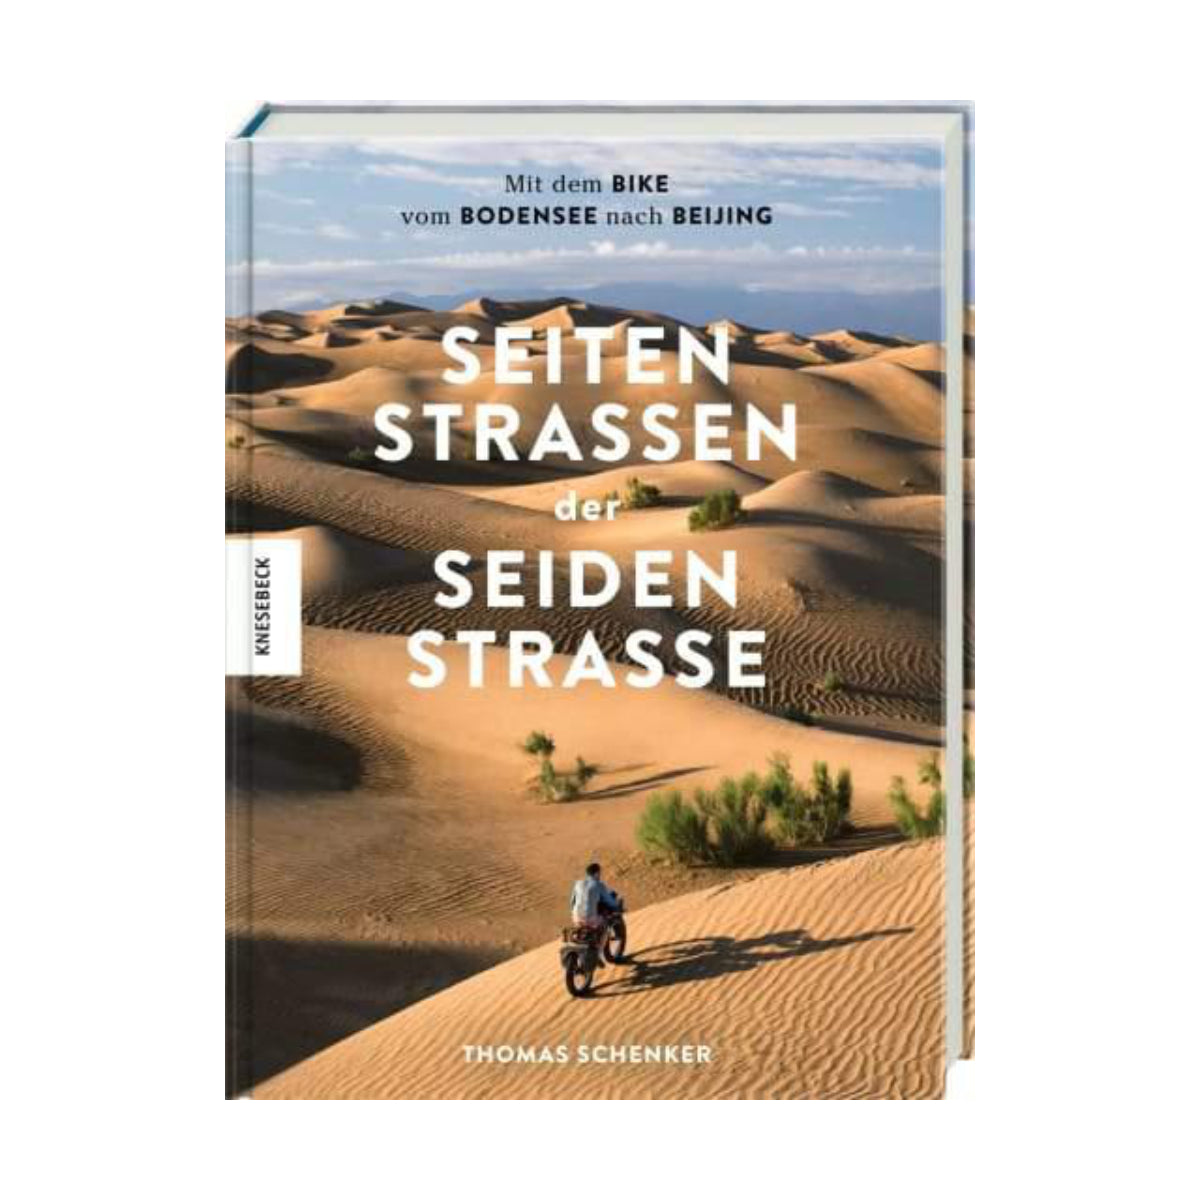 Knesebeck – Buch DIE SEITENSTRASSEN DER SEIDENSTRASSE von Thomas Schenker - WILDHOOD store